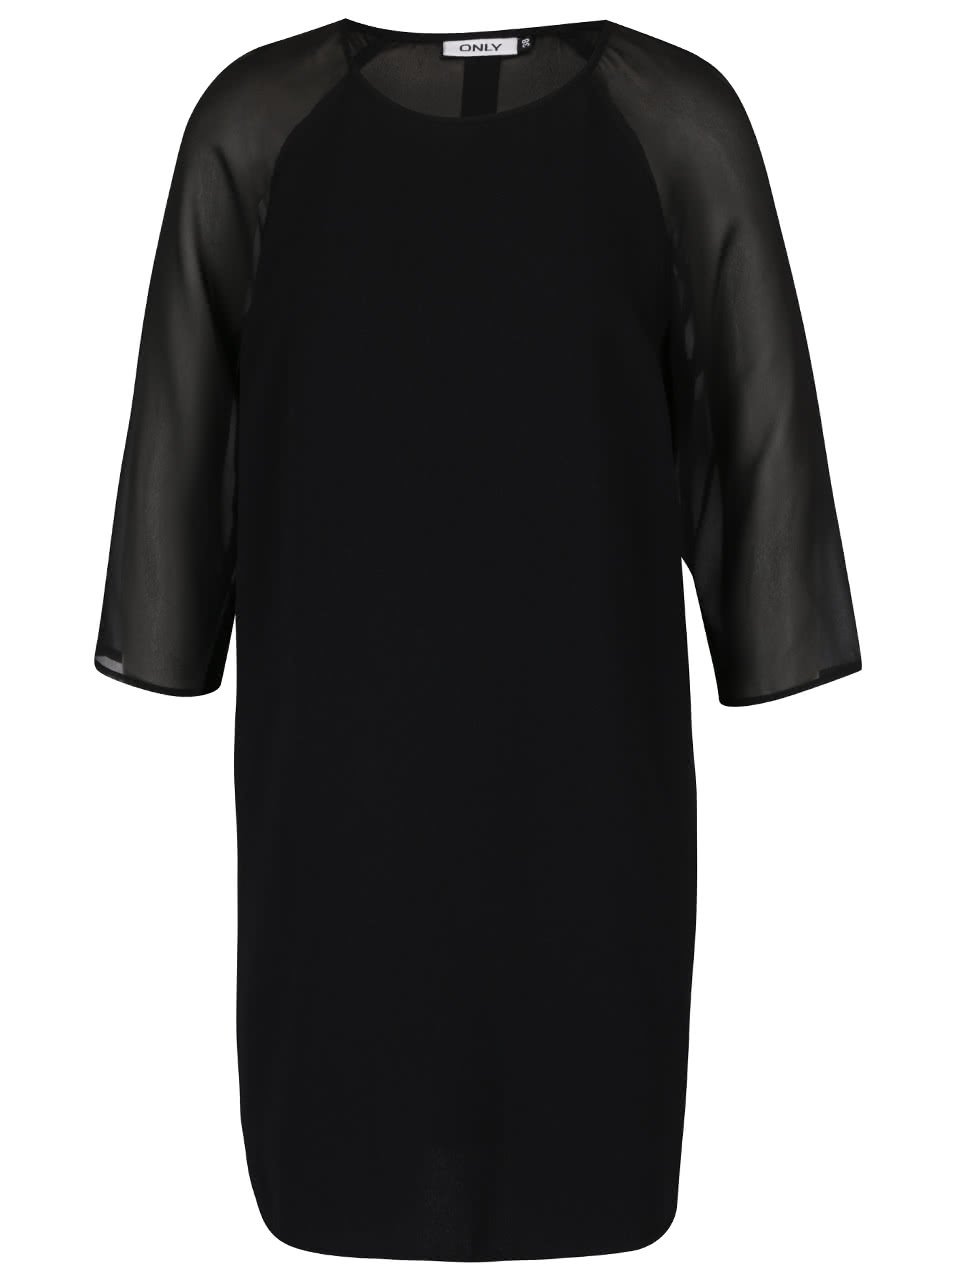 Černé volnější šaty s průsvitnými 3/4 rukávy ONLY Turner